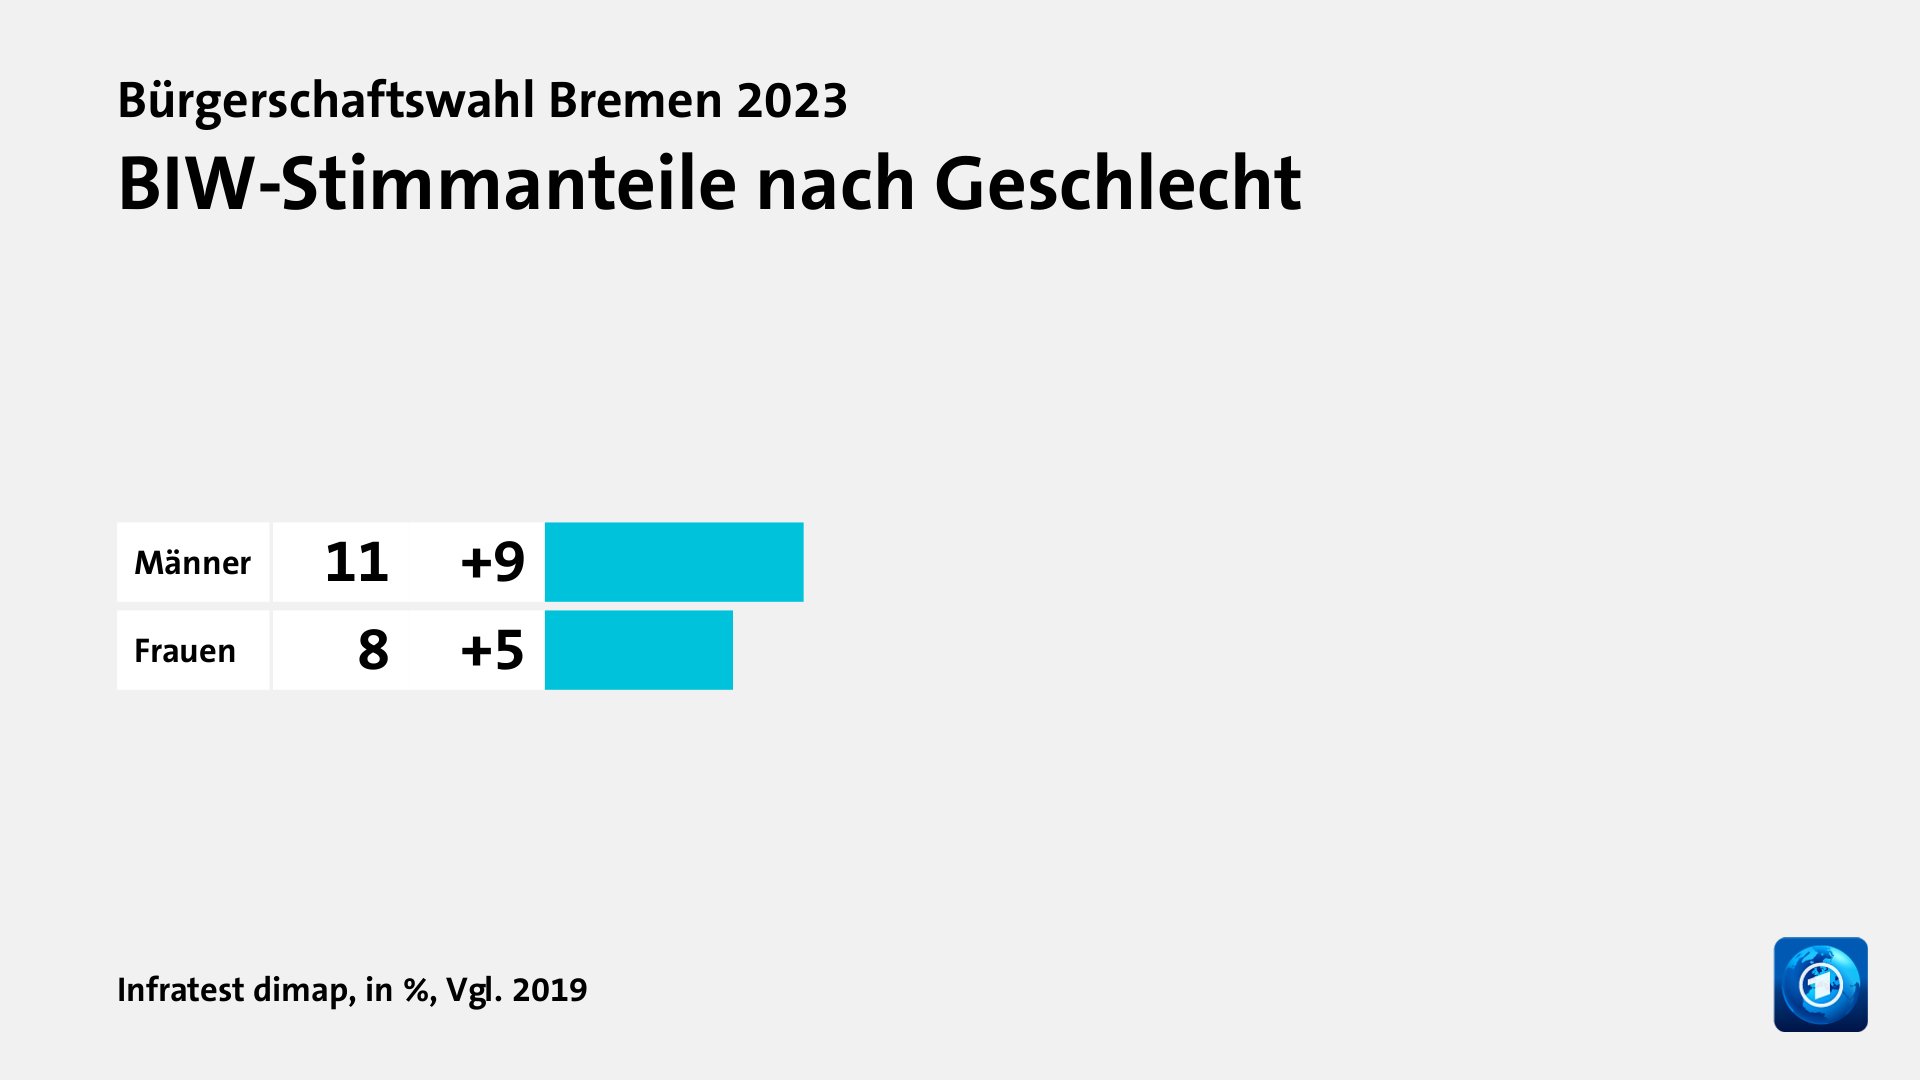 BIW-Stimmanteile nach Geschlecht, in %, Vgl. 2019: Männer 11, Frauen 8, Quelle: Infratest dimap